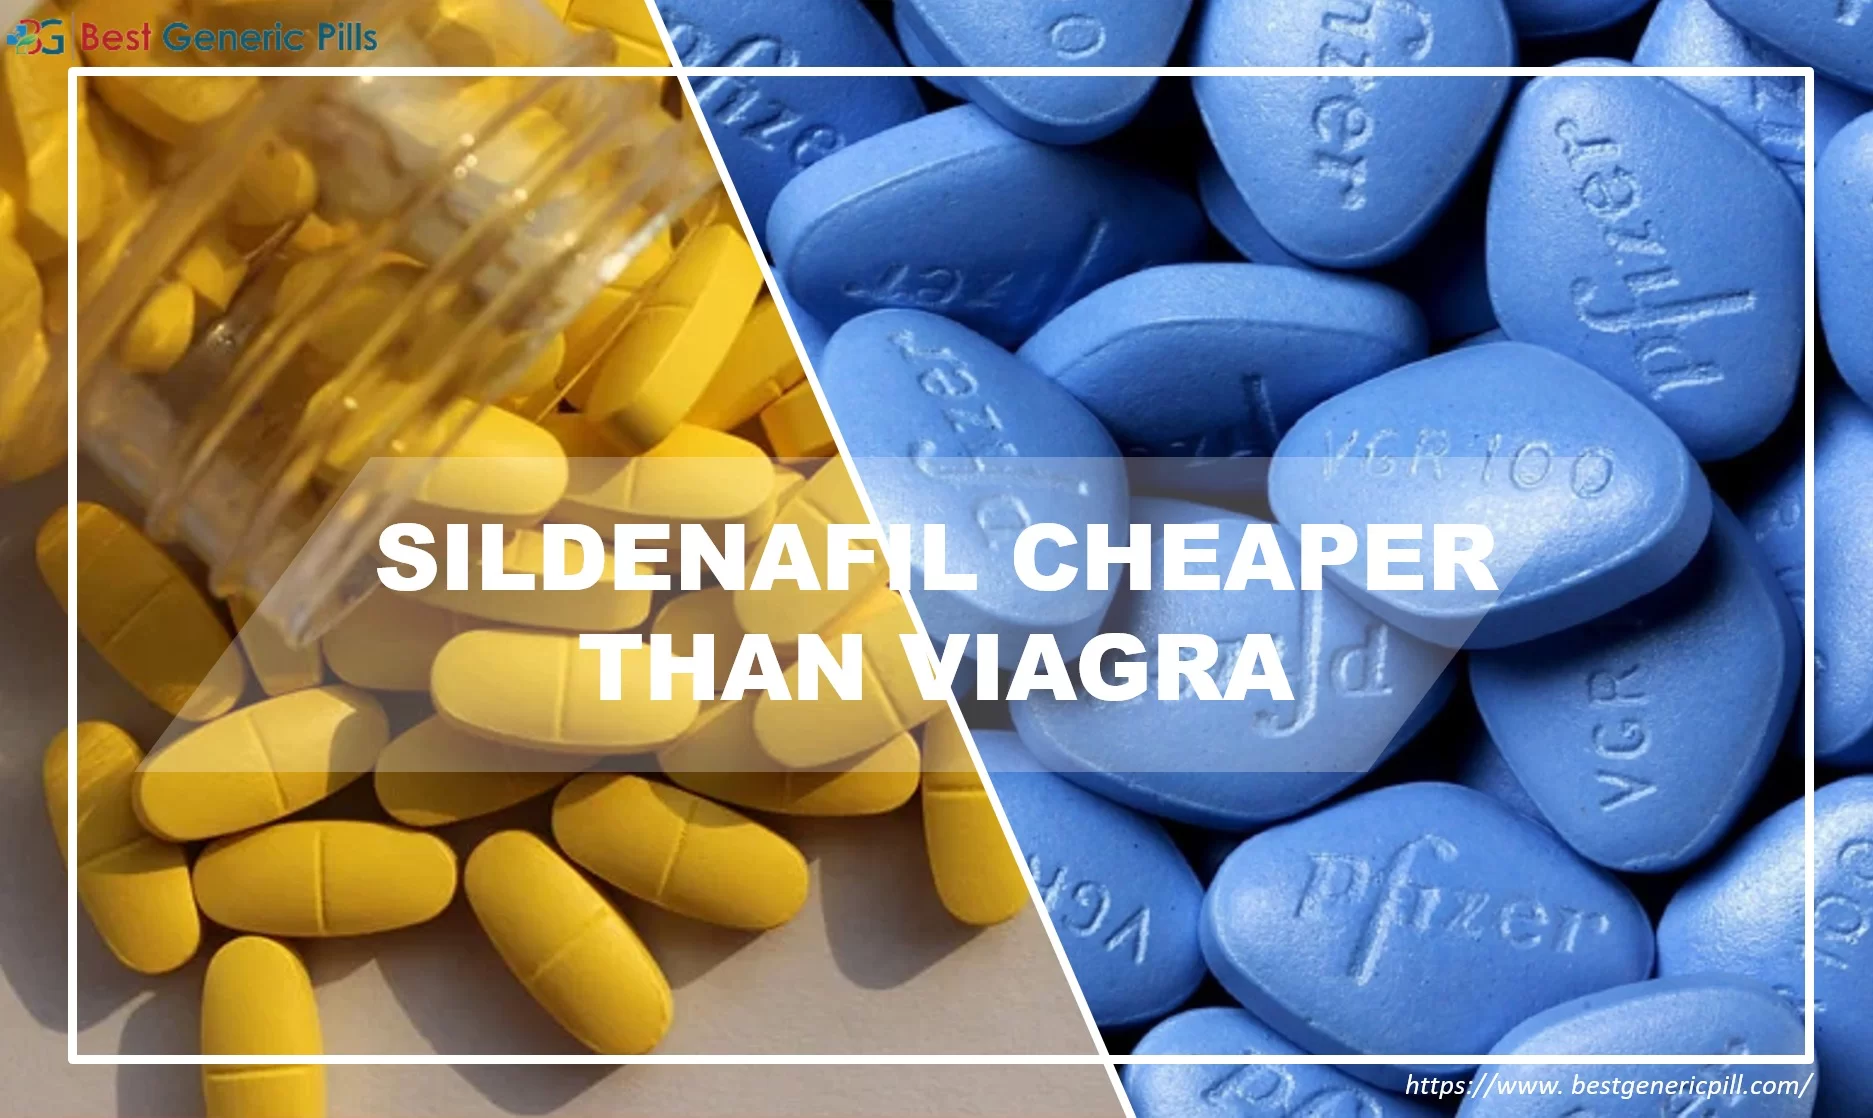 Sildenafil is cheaper than Viagra